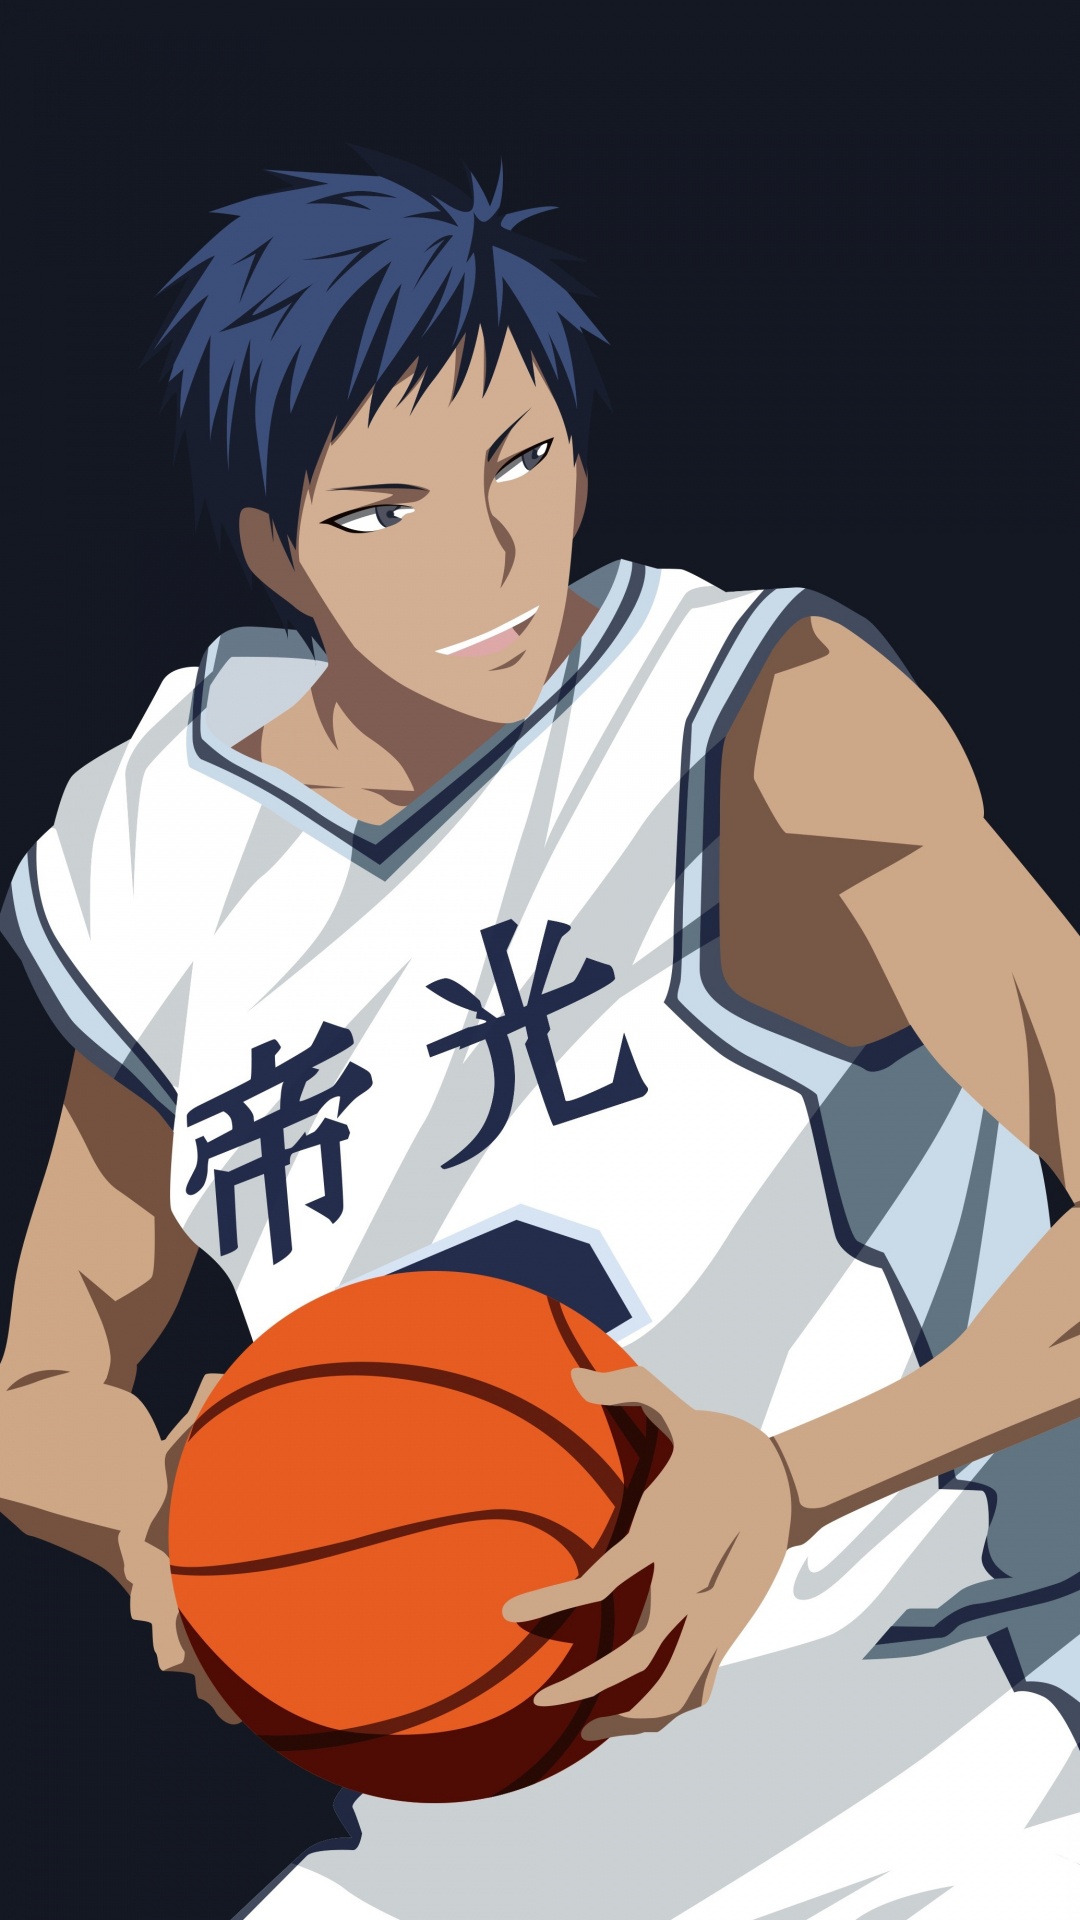 Personaje de Anime Masculino de Pelo Negro Sosteniendo Baloncesto. Wallpaper in 1080x1920 Resolution